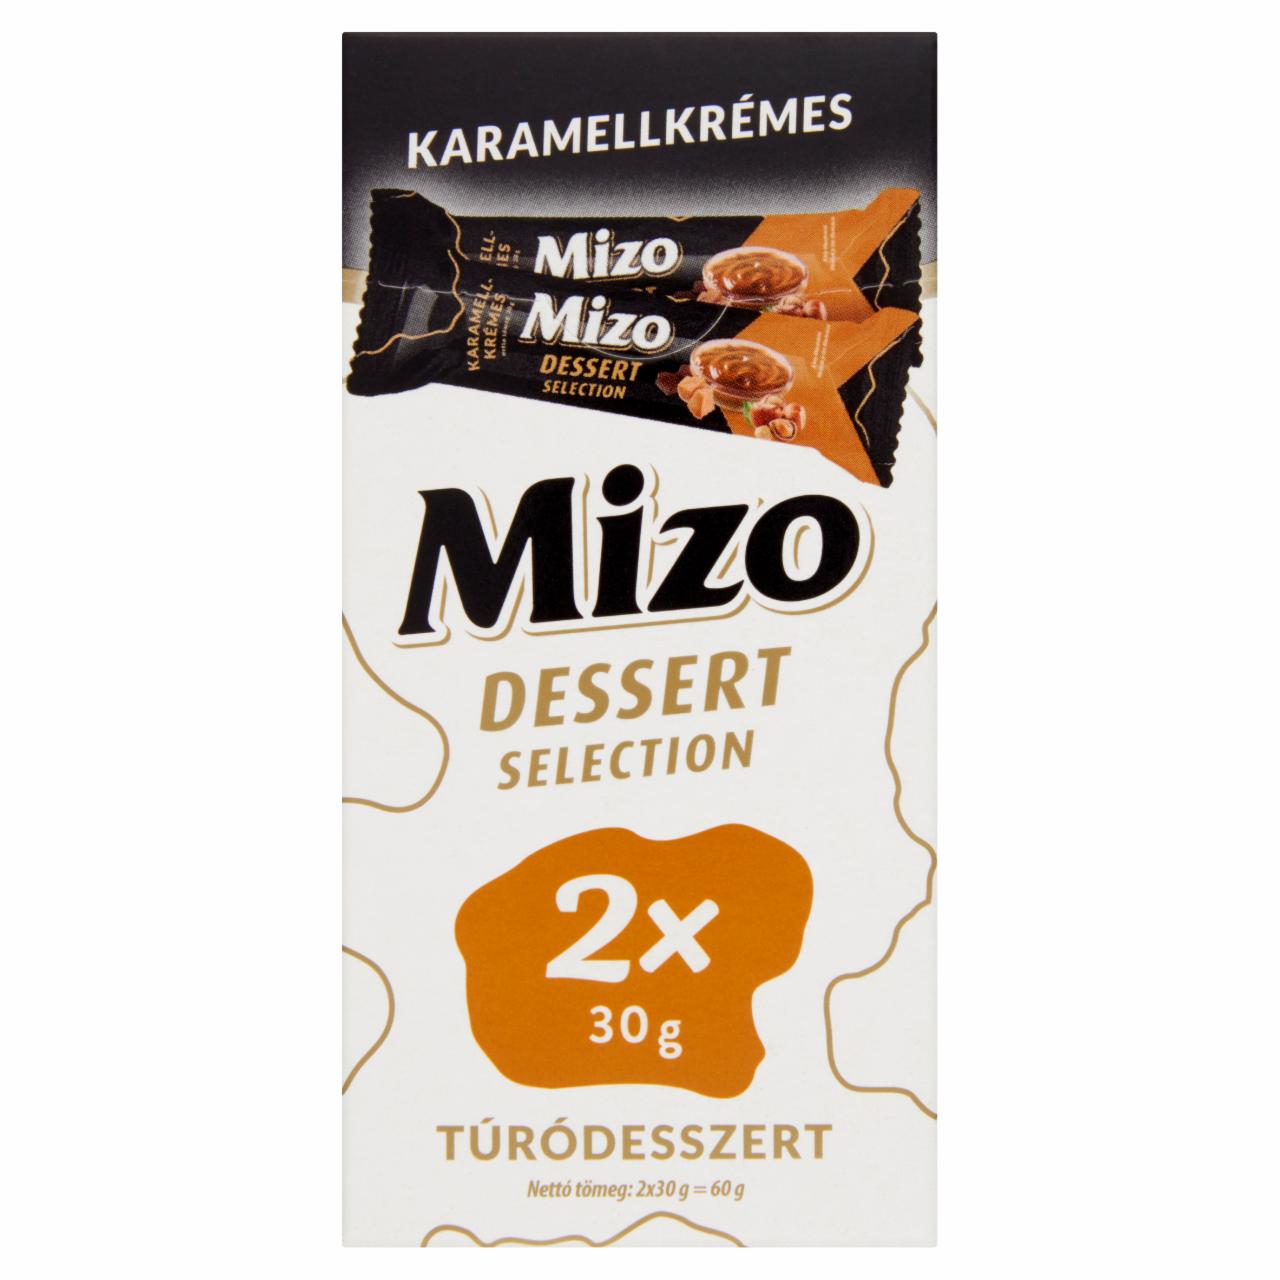 Képek - Mizo Dessert Selection karamellkrémes túródesszert 2 x 30 g